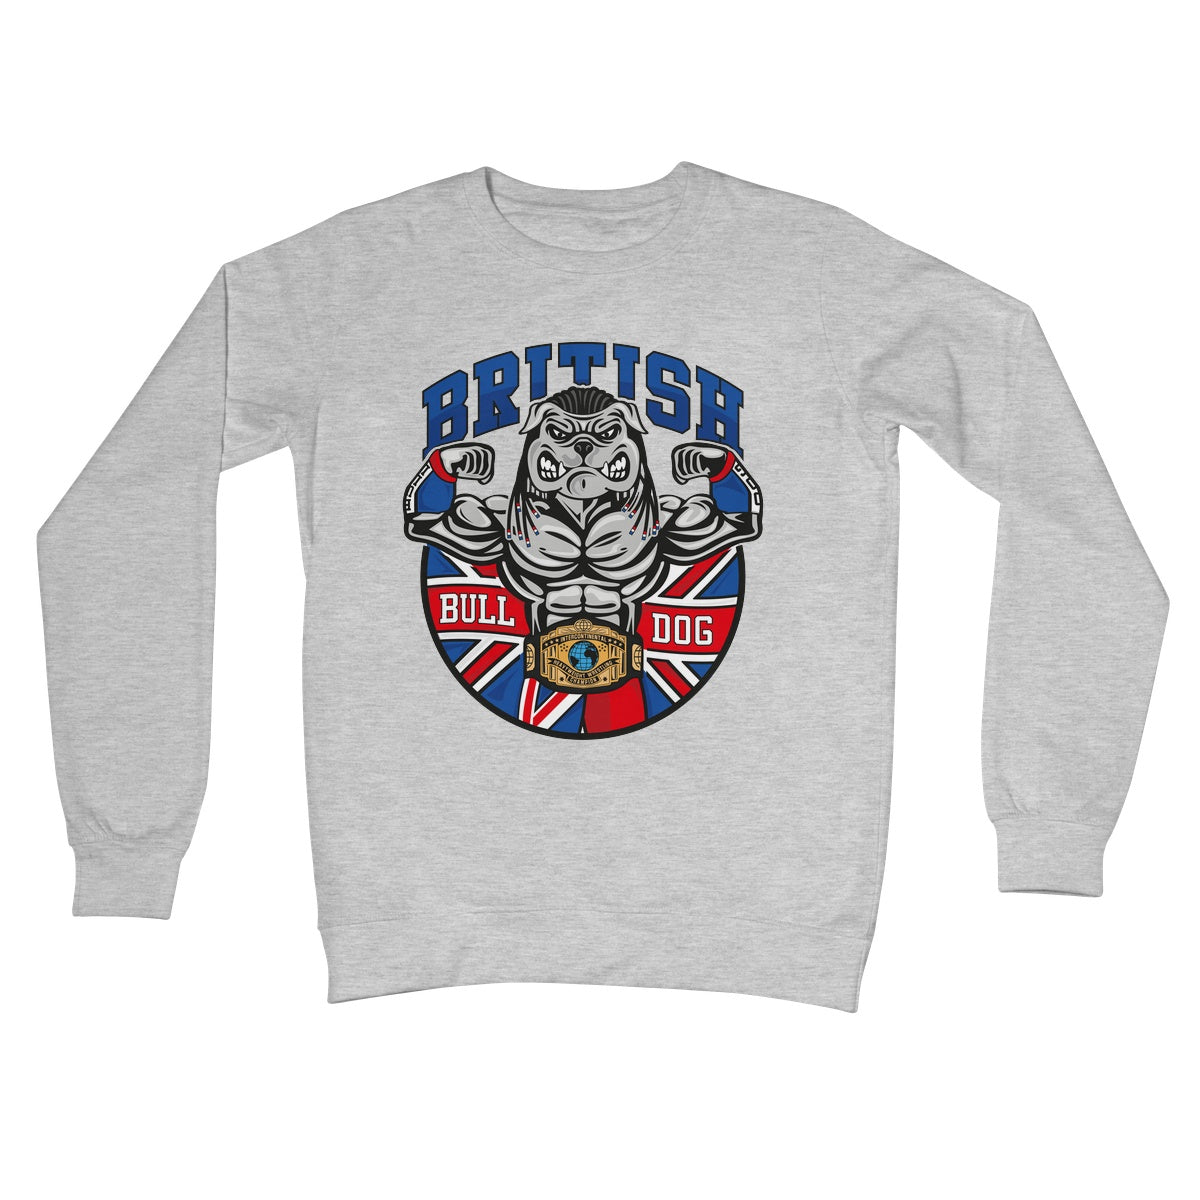 British Bulldog Matilda Crew Neck Sweatshirt